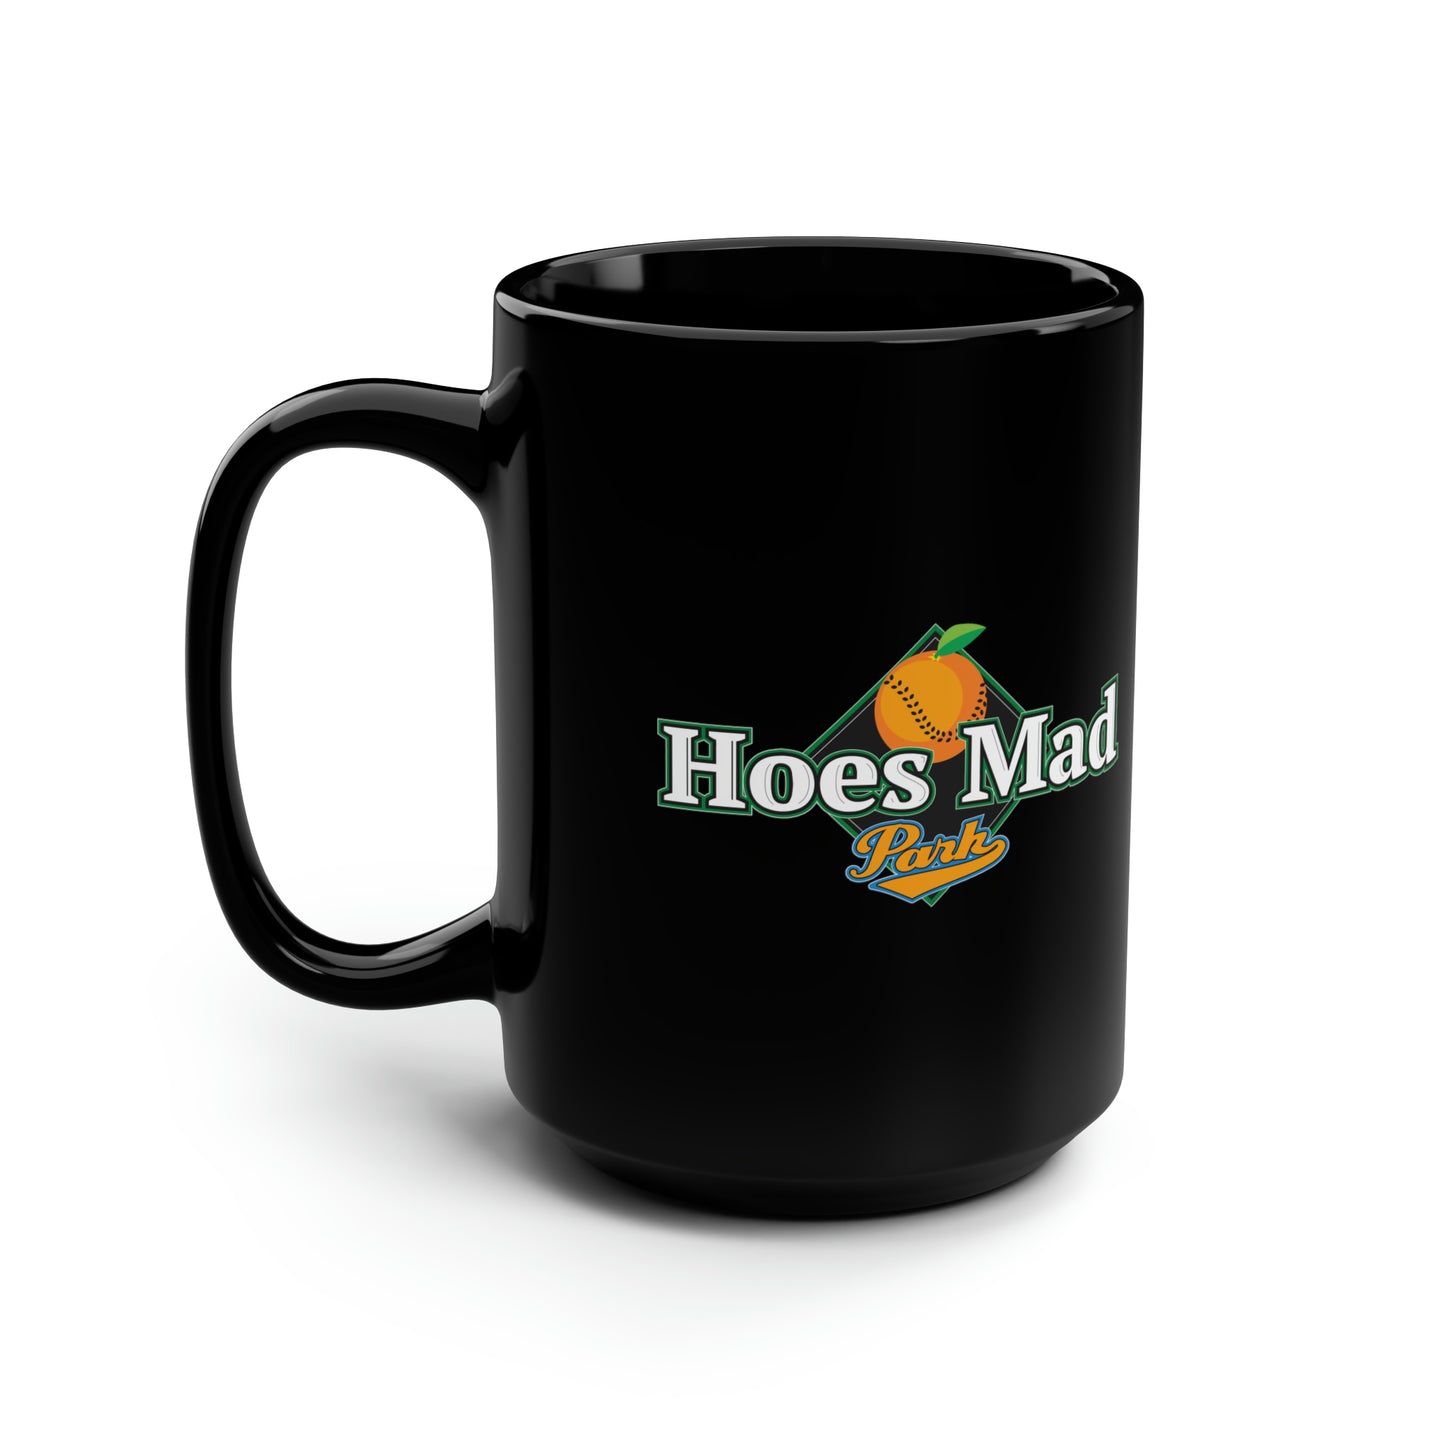 Hoe's Mad Black Mug 15oz